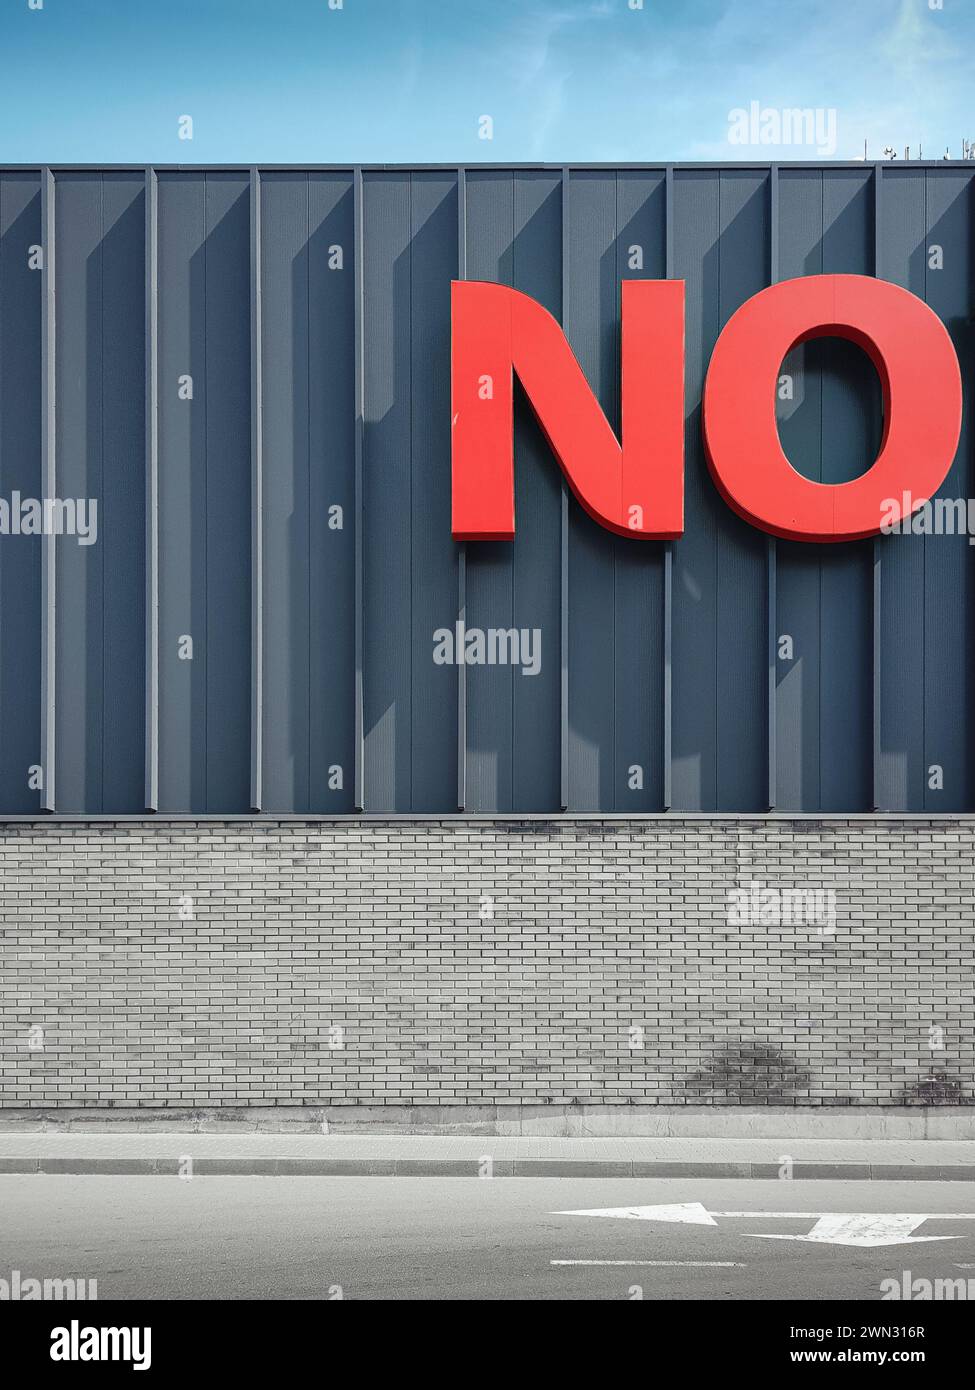 NO - risposta negativa. Grandi lettere rosse sulle pareti dell'edificio moderno in una giornata di sole. Foto Stock